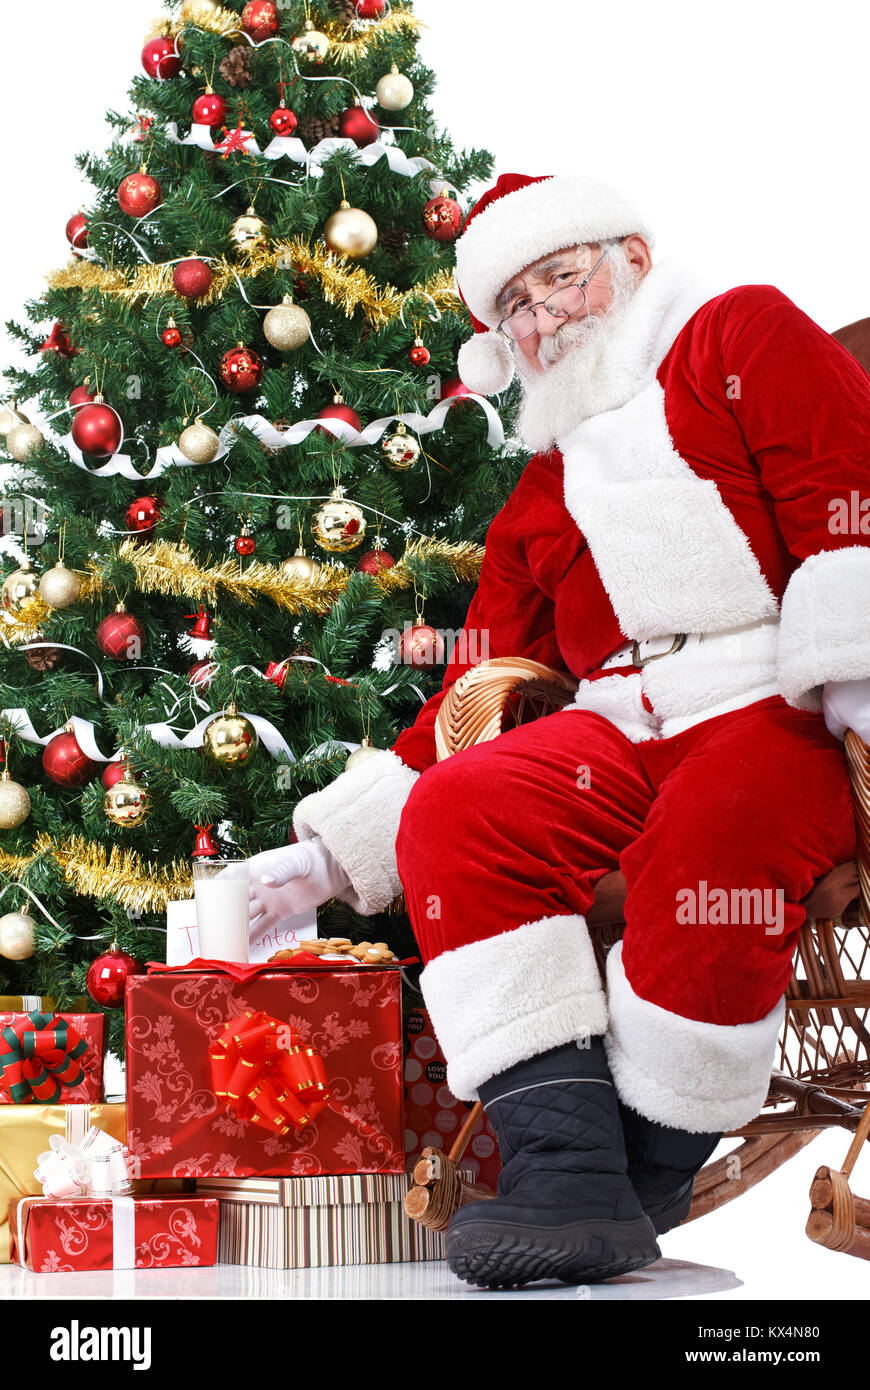 Santa seduta accanto ad albero di Natale e tenendo il latte , che sono stati lasciati per lui Foto Stock